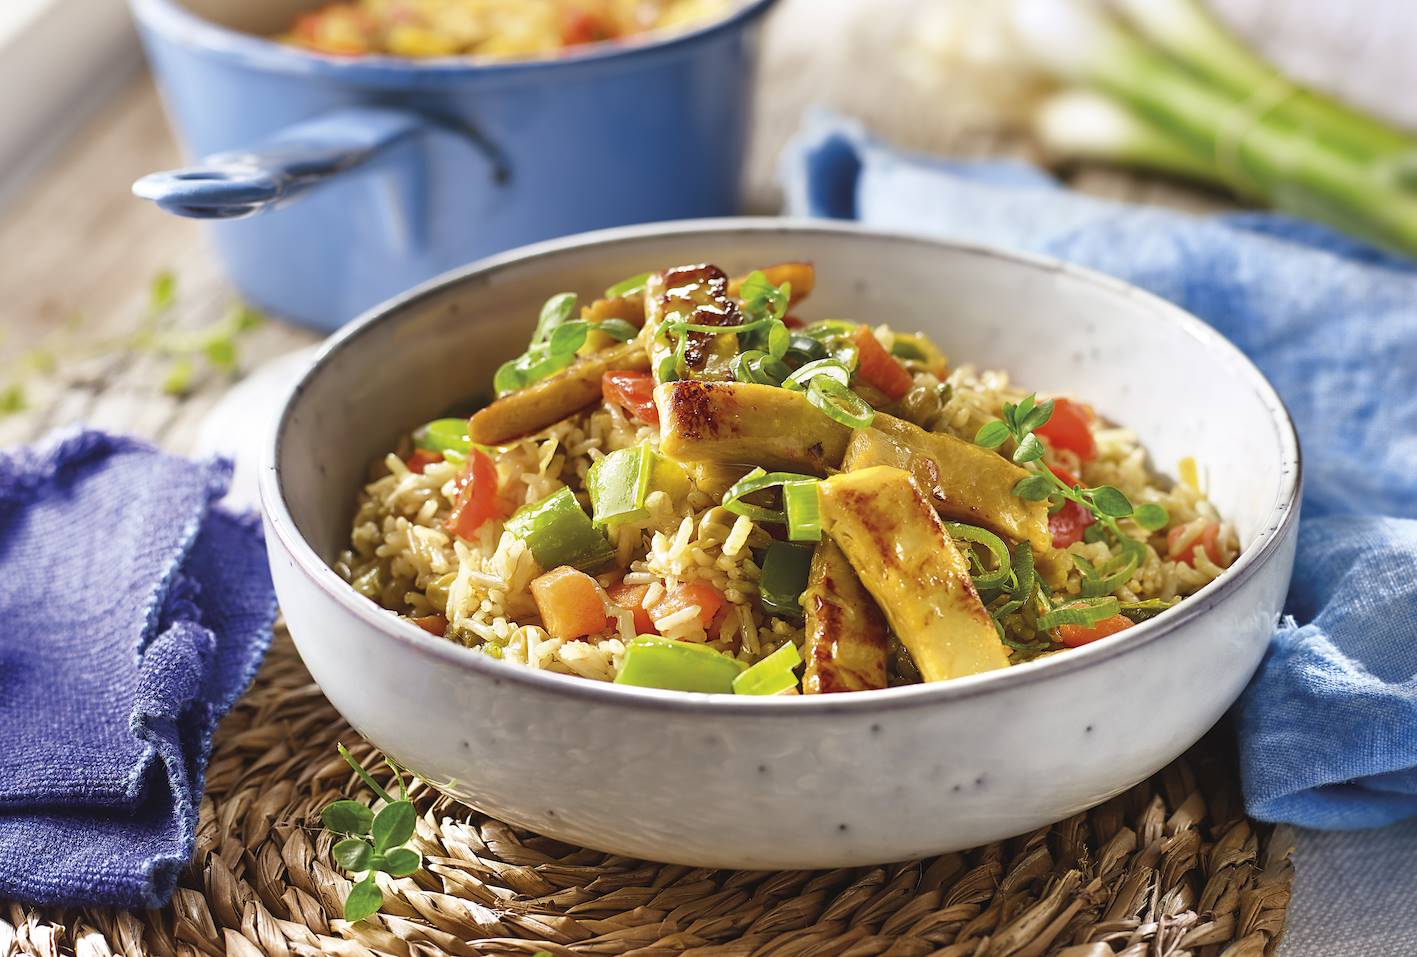 Arroz basmati salteado con Heura y verduras variadas al curry.